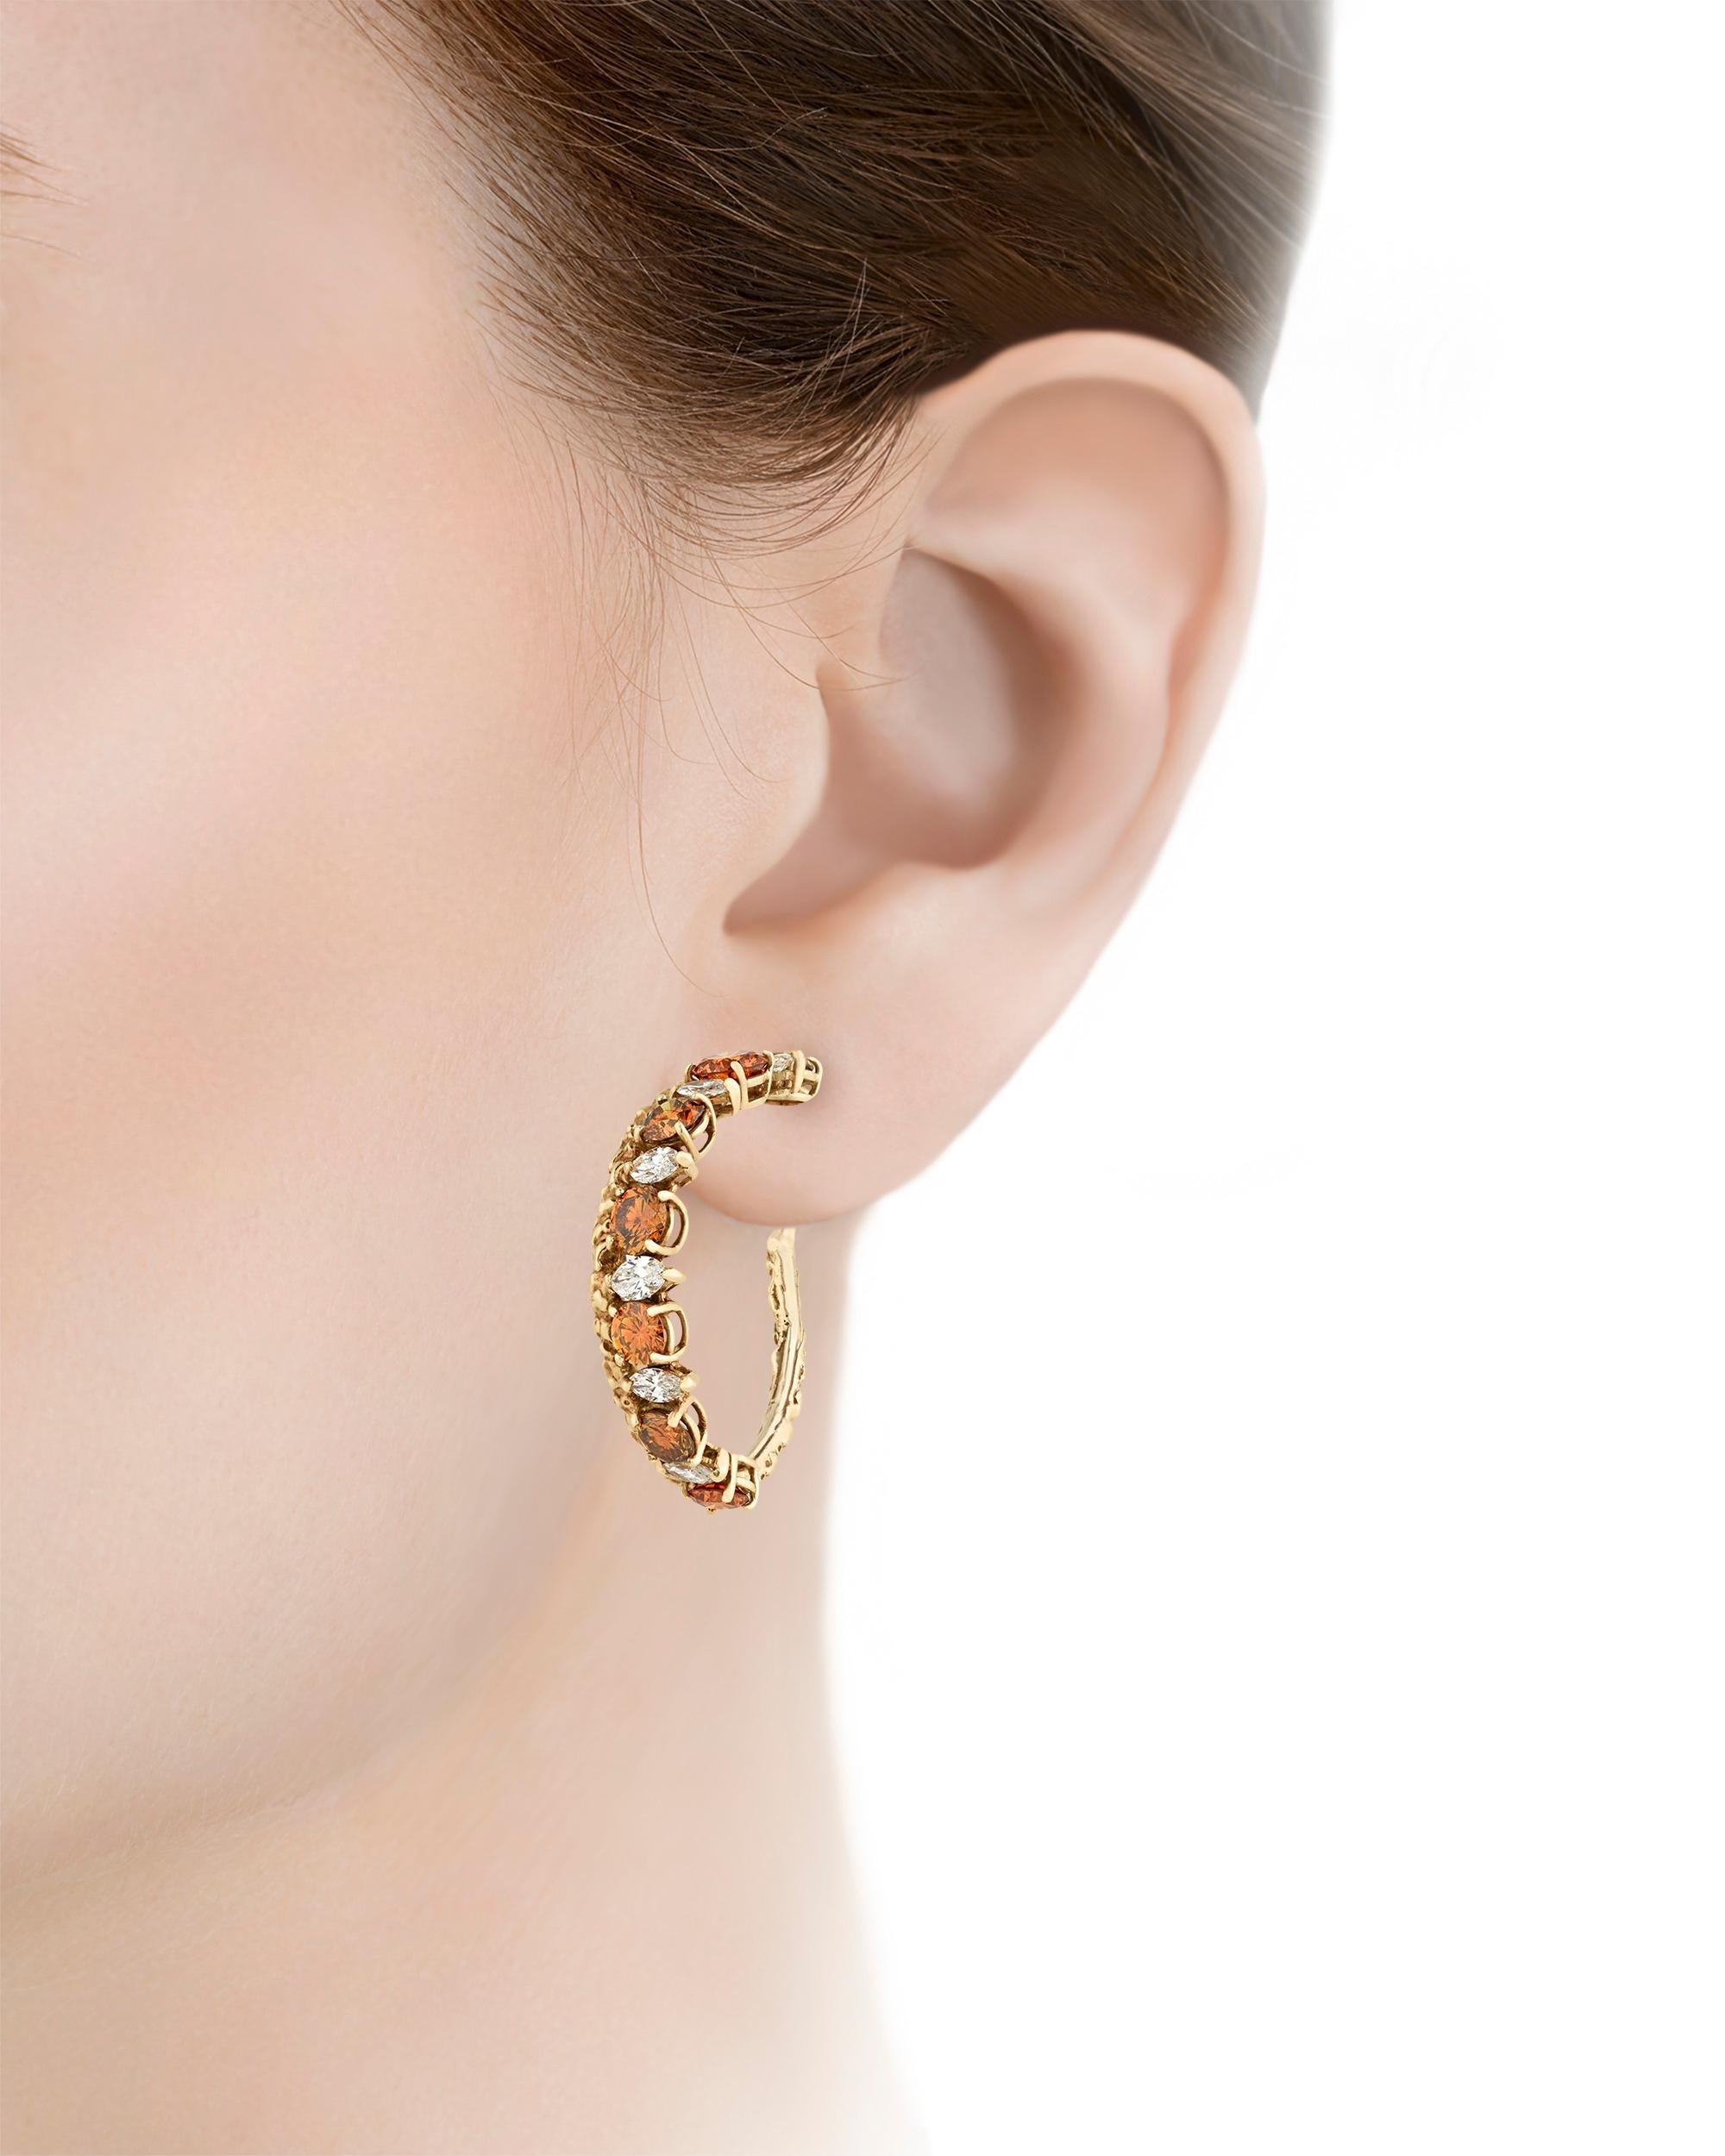 Marquise Cut Diamond Hoop Earrings by Van Cleef & Arpels